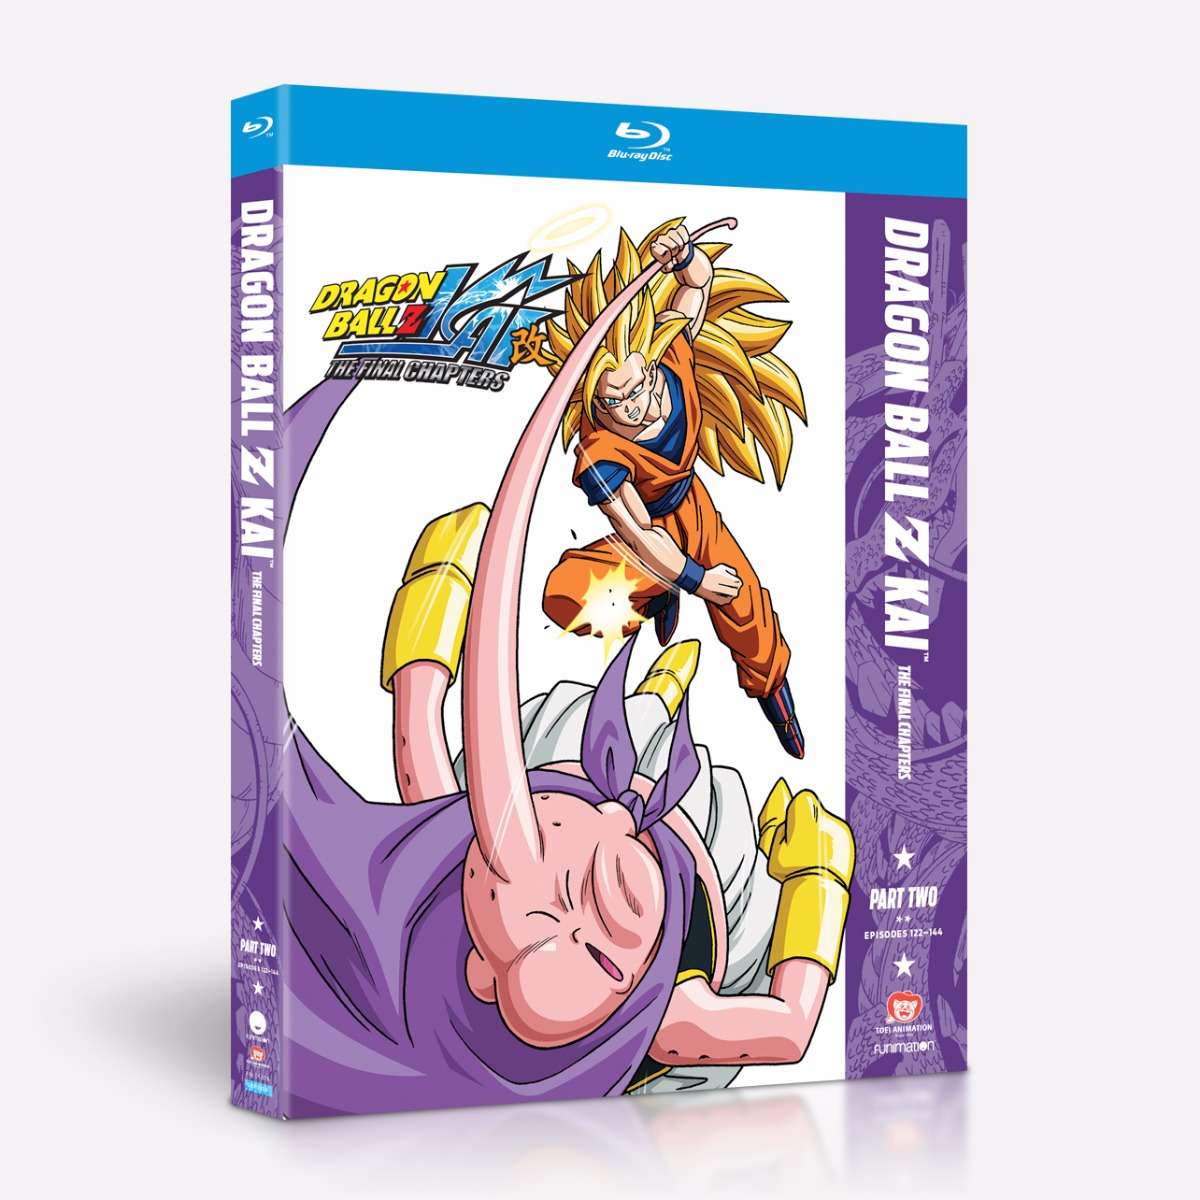 Dragon Ball Z Kai Season 2 Episodes 27-52 DVD 4 Disc Set Toei Animation  Anime